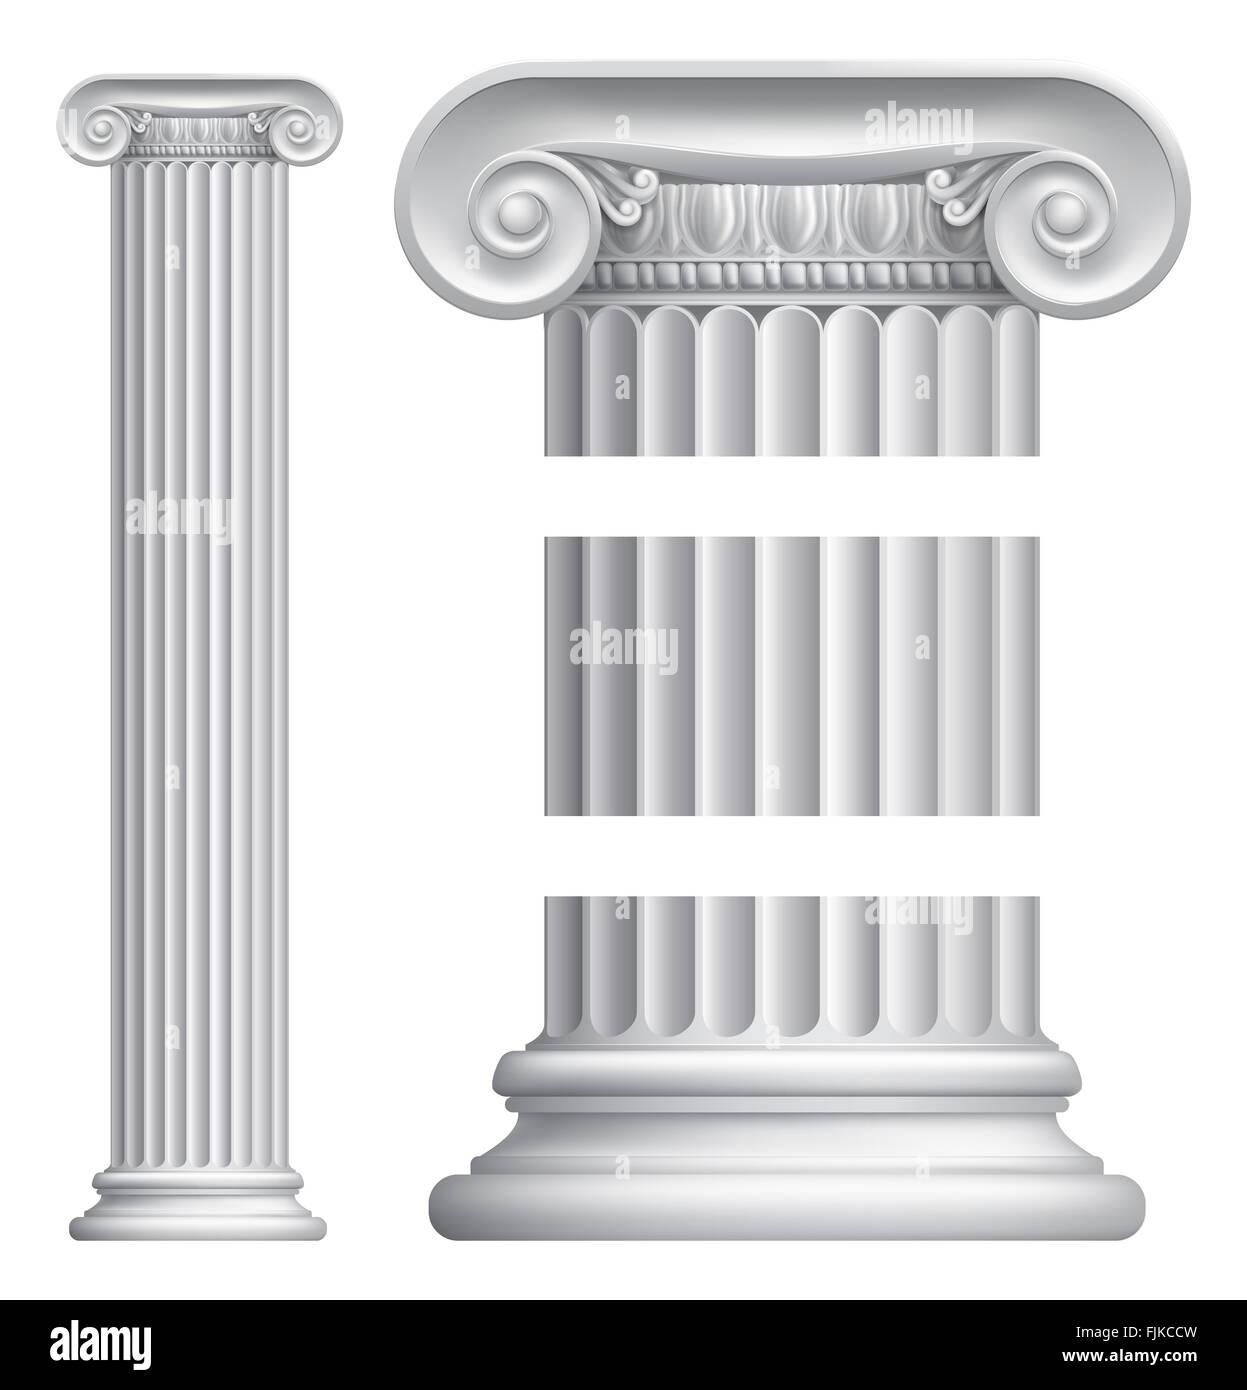 Pedestal para plantas con columna romana vintage, redondo y